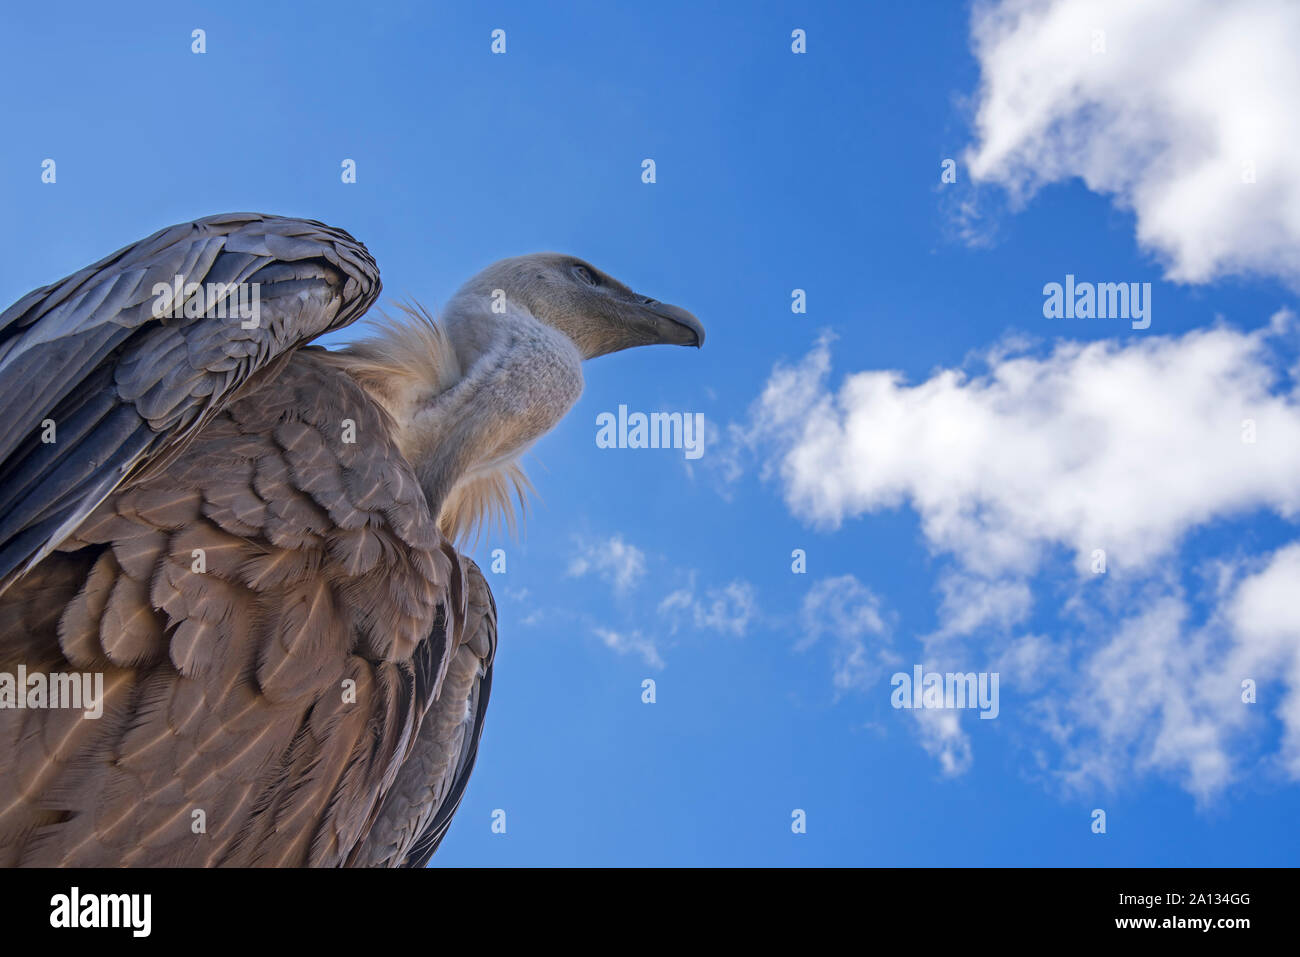 Vue d'ensemble vers le vautour fauve (Gyps fulvus) contre le ciel bleu avec des nuages blancs Banque D'Images